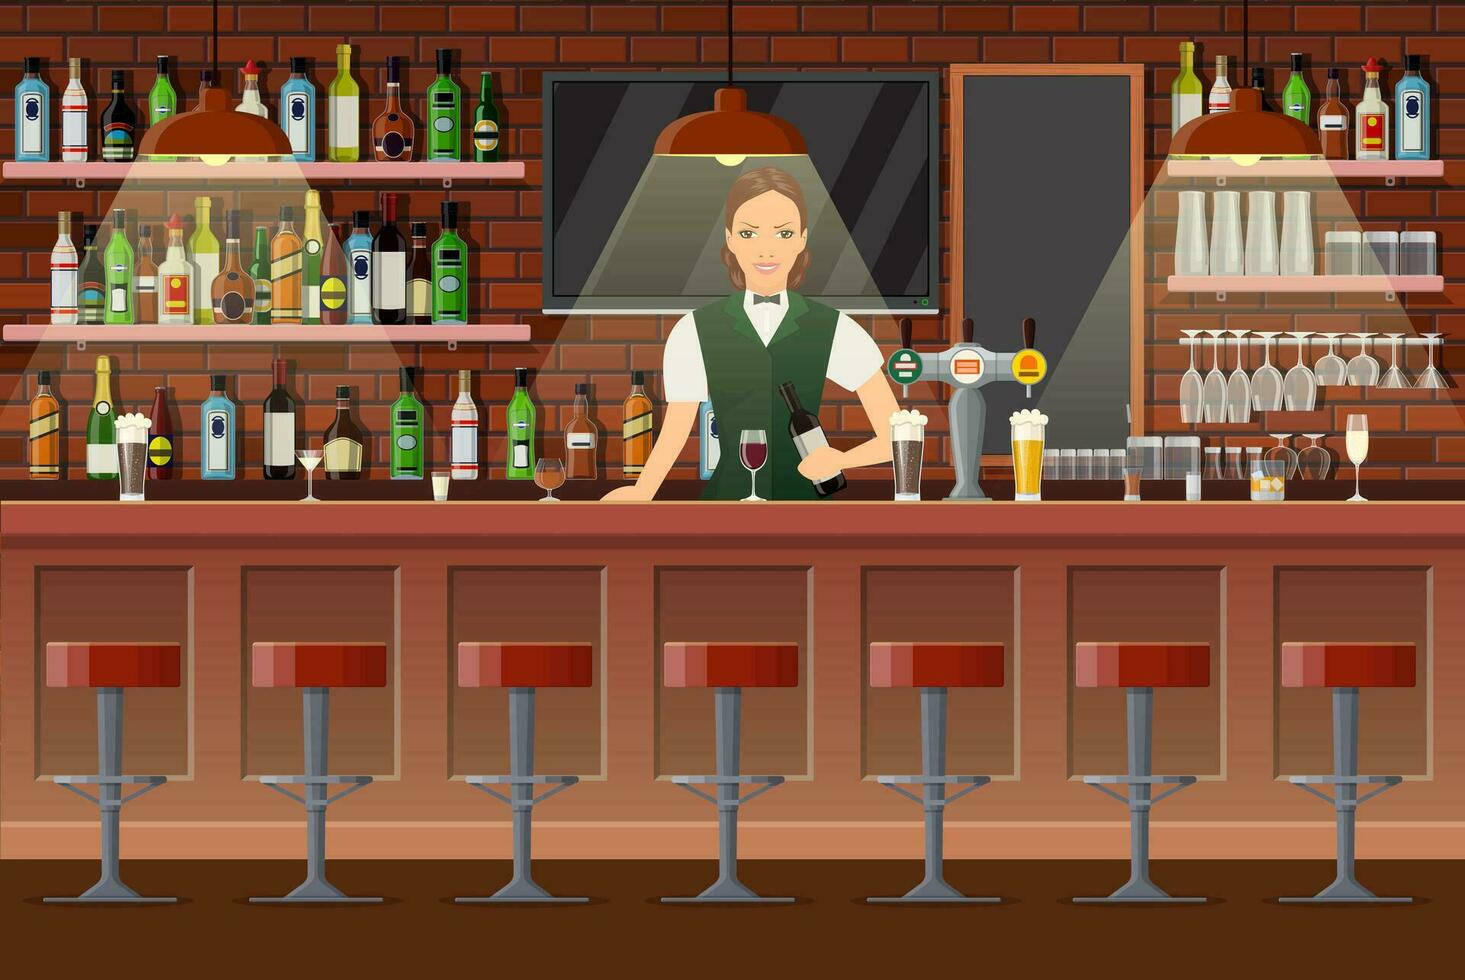 en buvant établissement. intérieur de pub, café ou bar. bar compteur avec barman Dame et du vin bouteilles sur le étagères derrière son. lunettes, la télé, lampe. en bois décor. vecteur illustration dans plat style